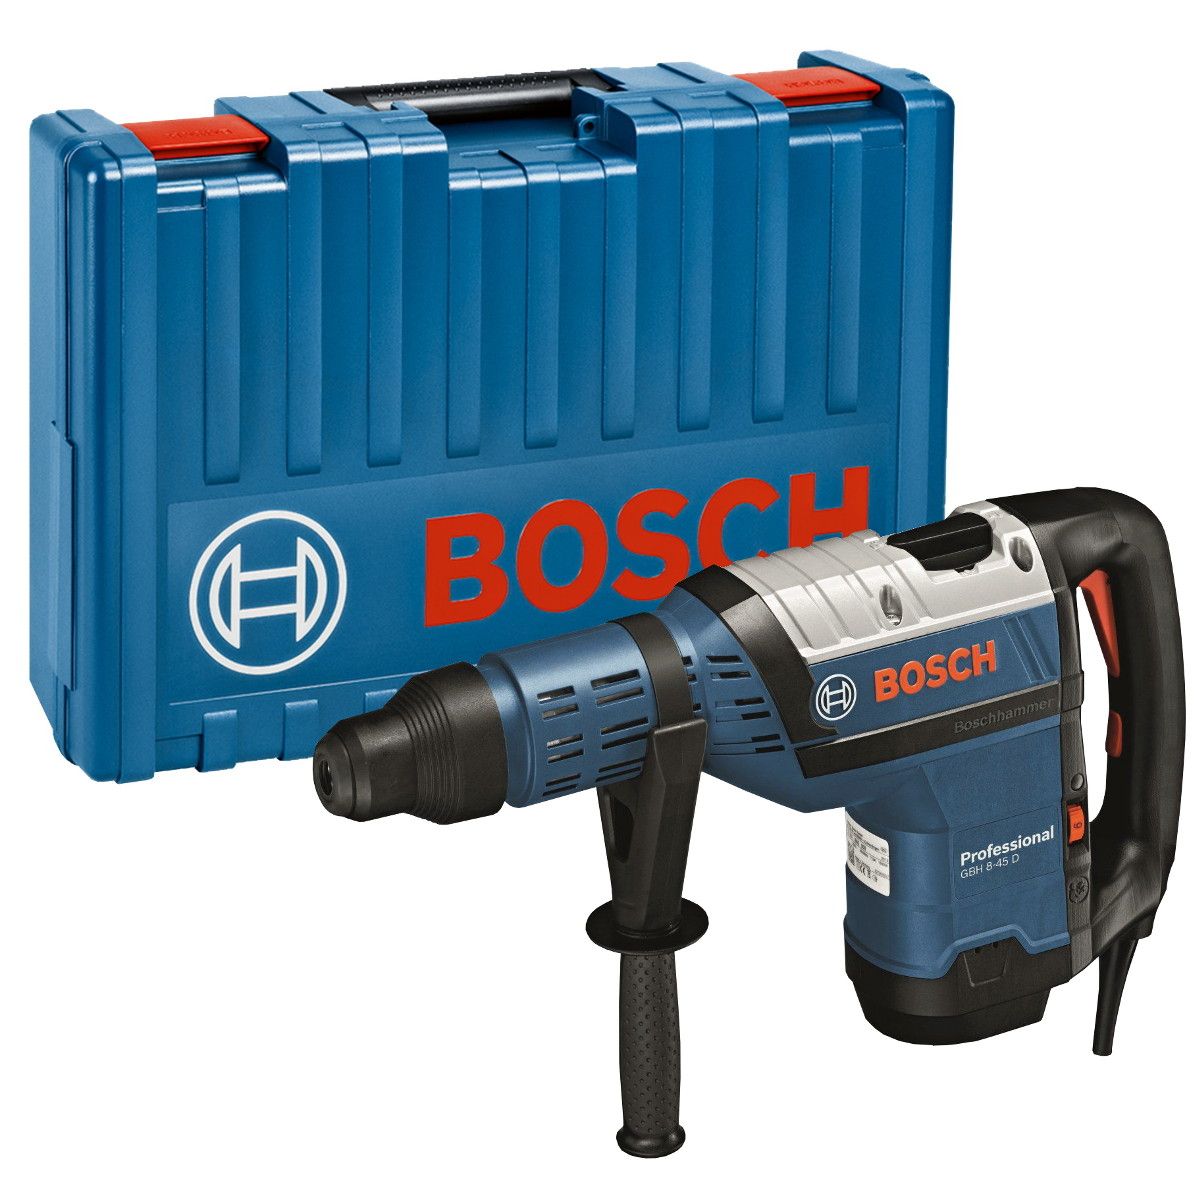 Bosch GBH 8-45 D SDS max boorhamer 12,5J in koffer